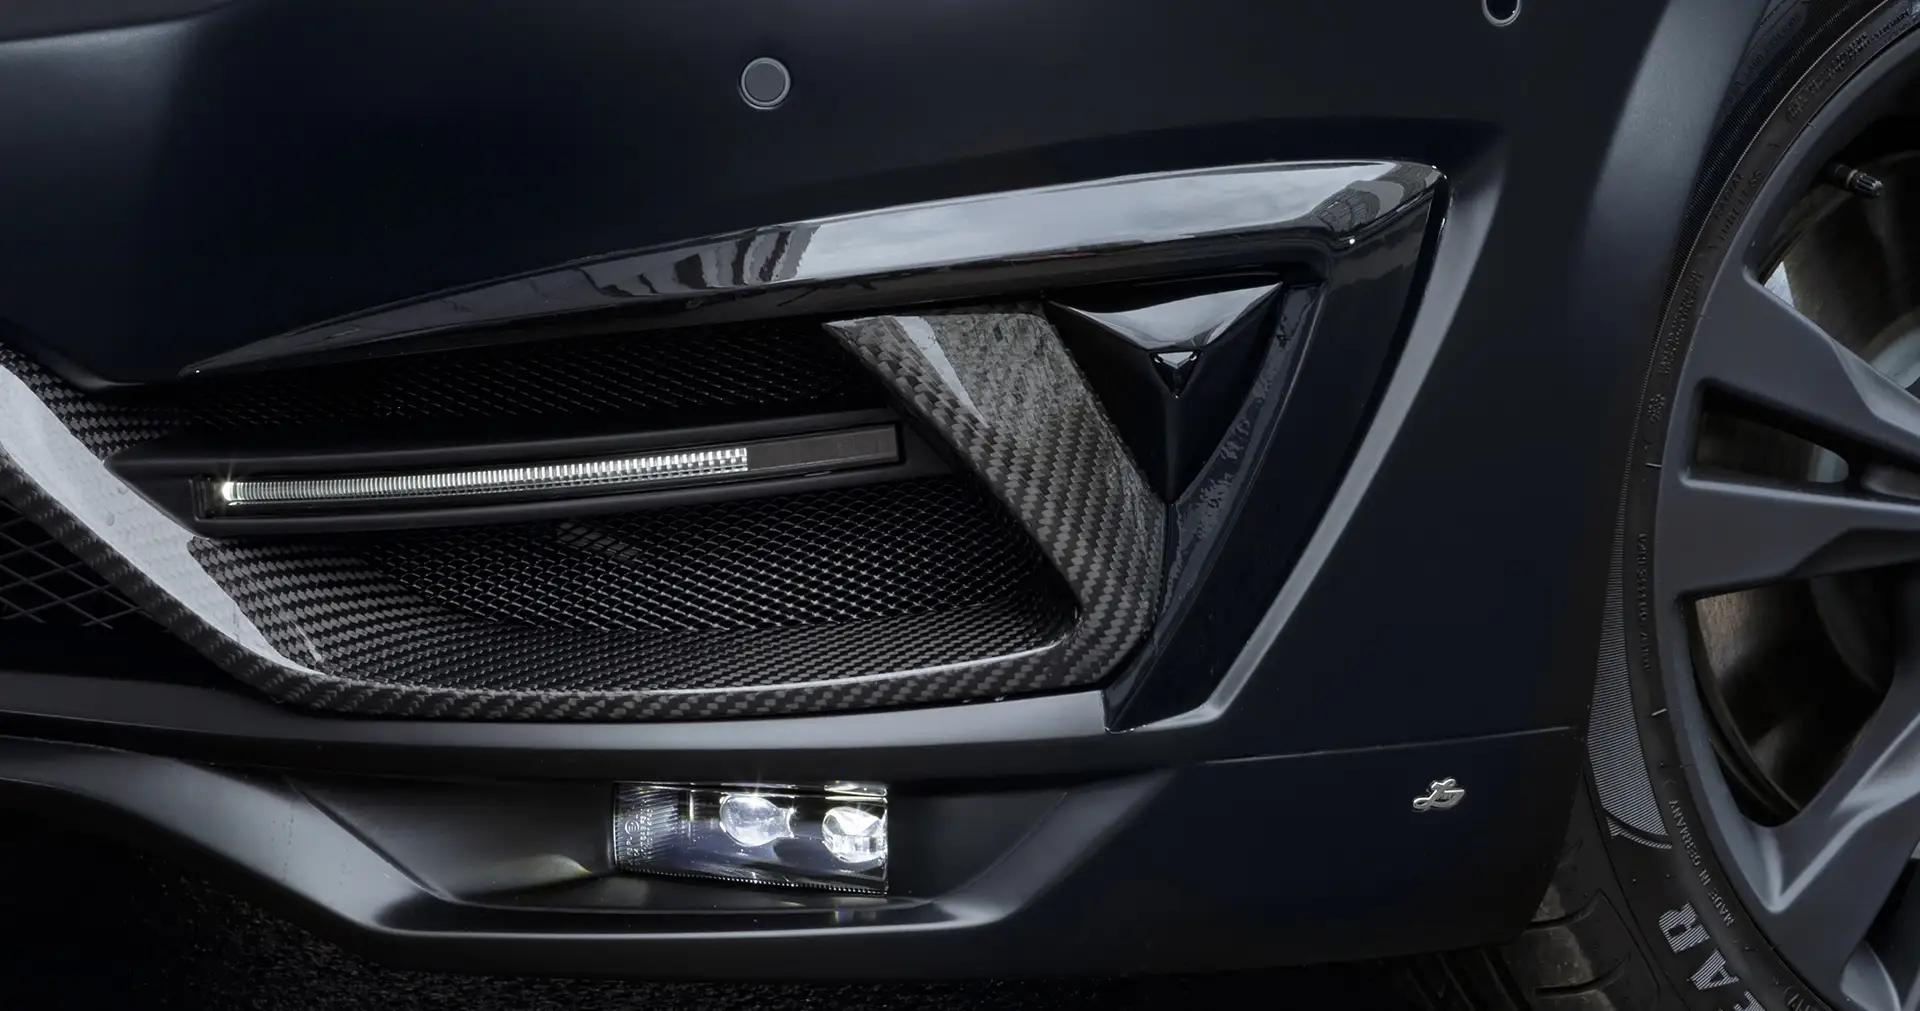 Original Design Frontstoßstangen-Verkleidungen mit Black Crystal für Mercedes-Benz V-Klasse W447 2014/2015/2016/2017/2018/2019/2020/2021/2022/2023/2024 erhalten